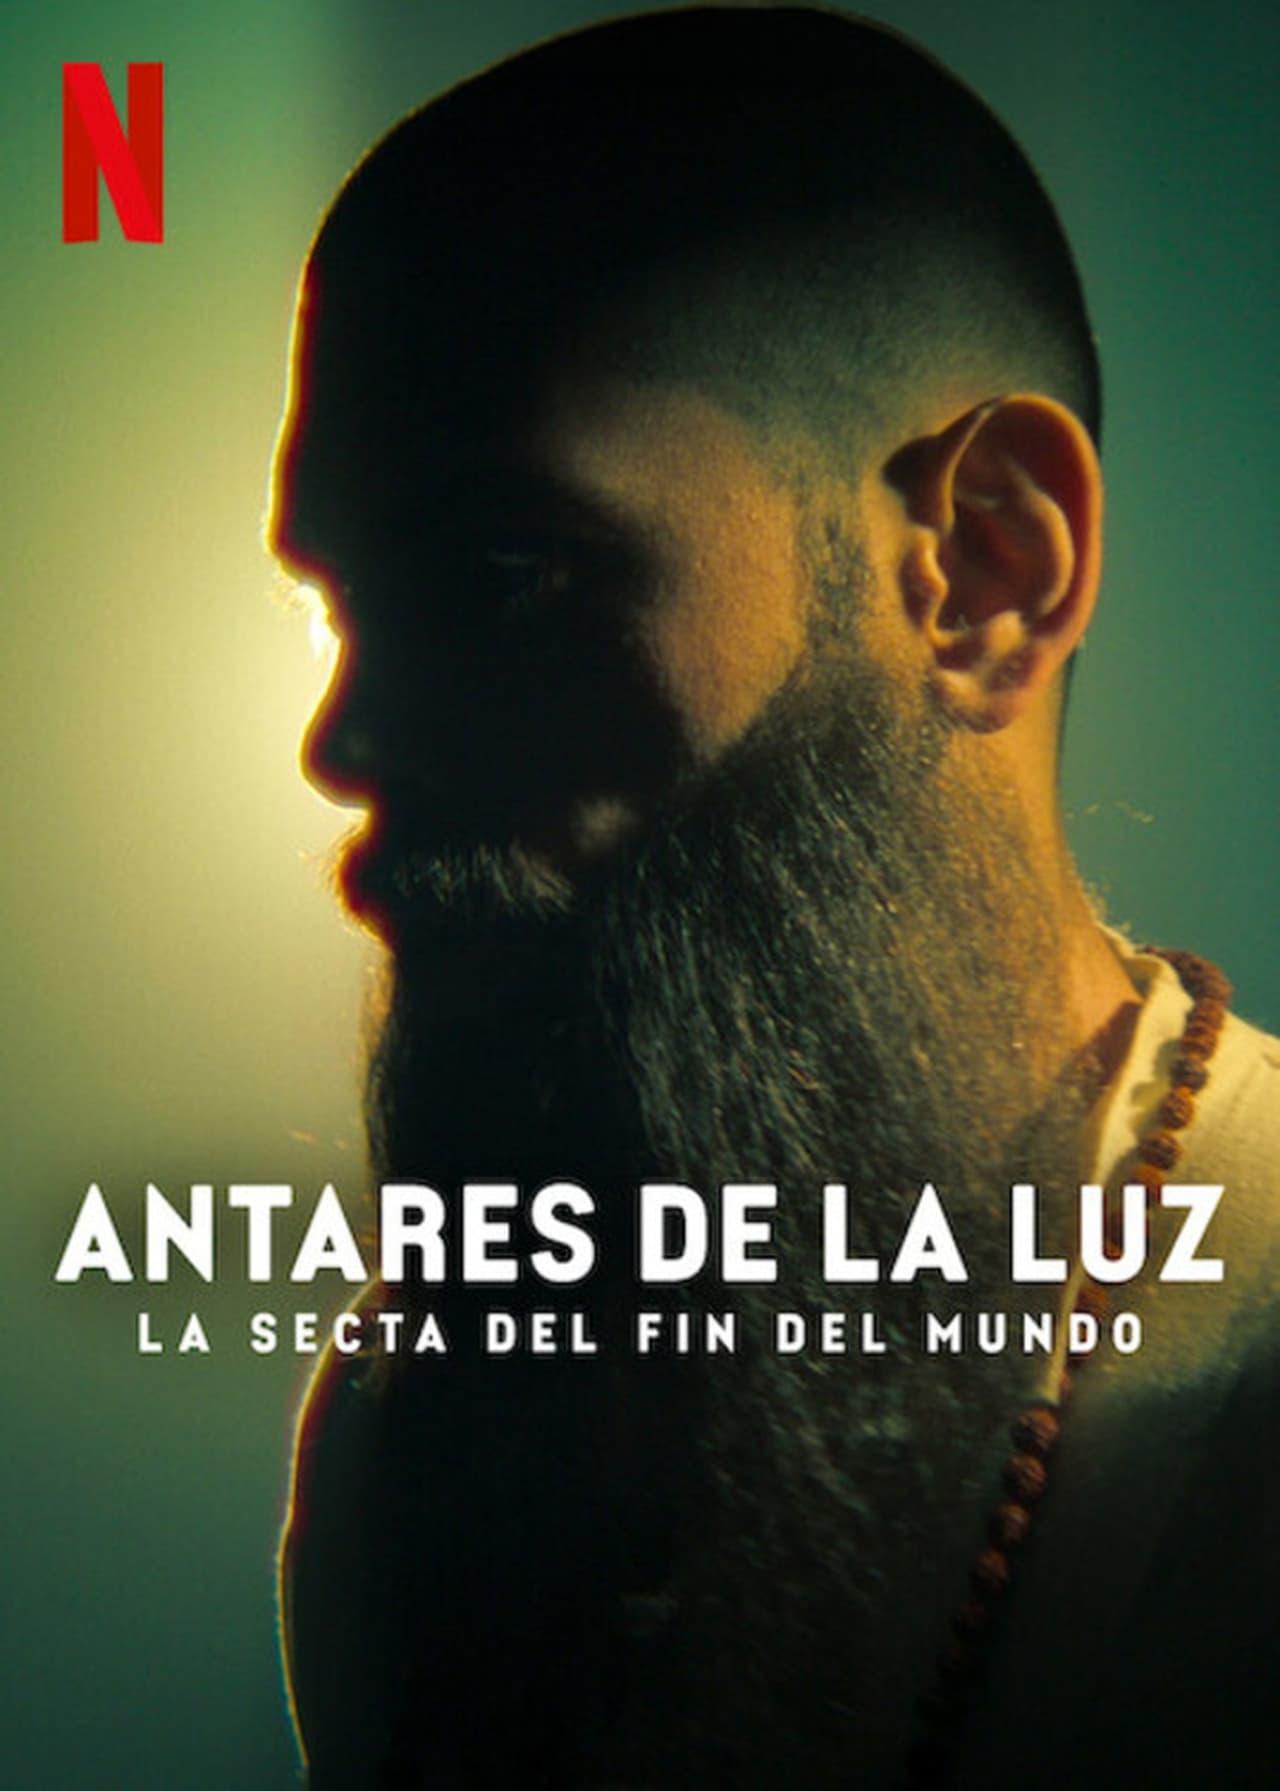 The Doomsday Cult of Antares de la Luz | awwrated | 你的 Netflix 避雷好幫手!